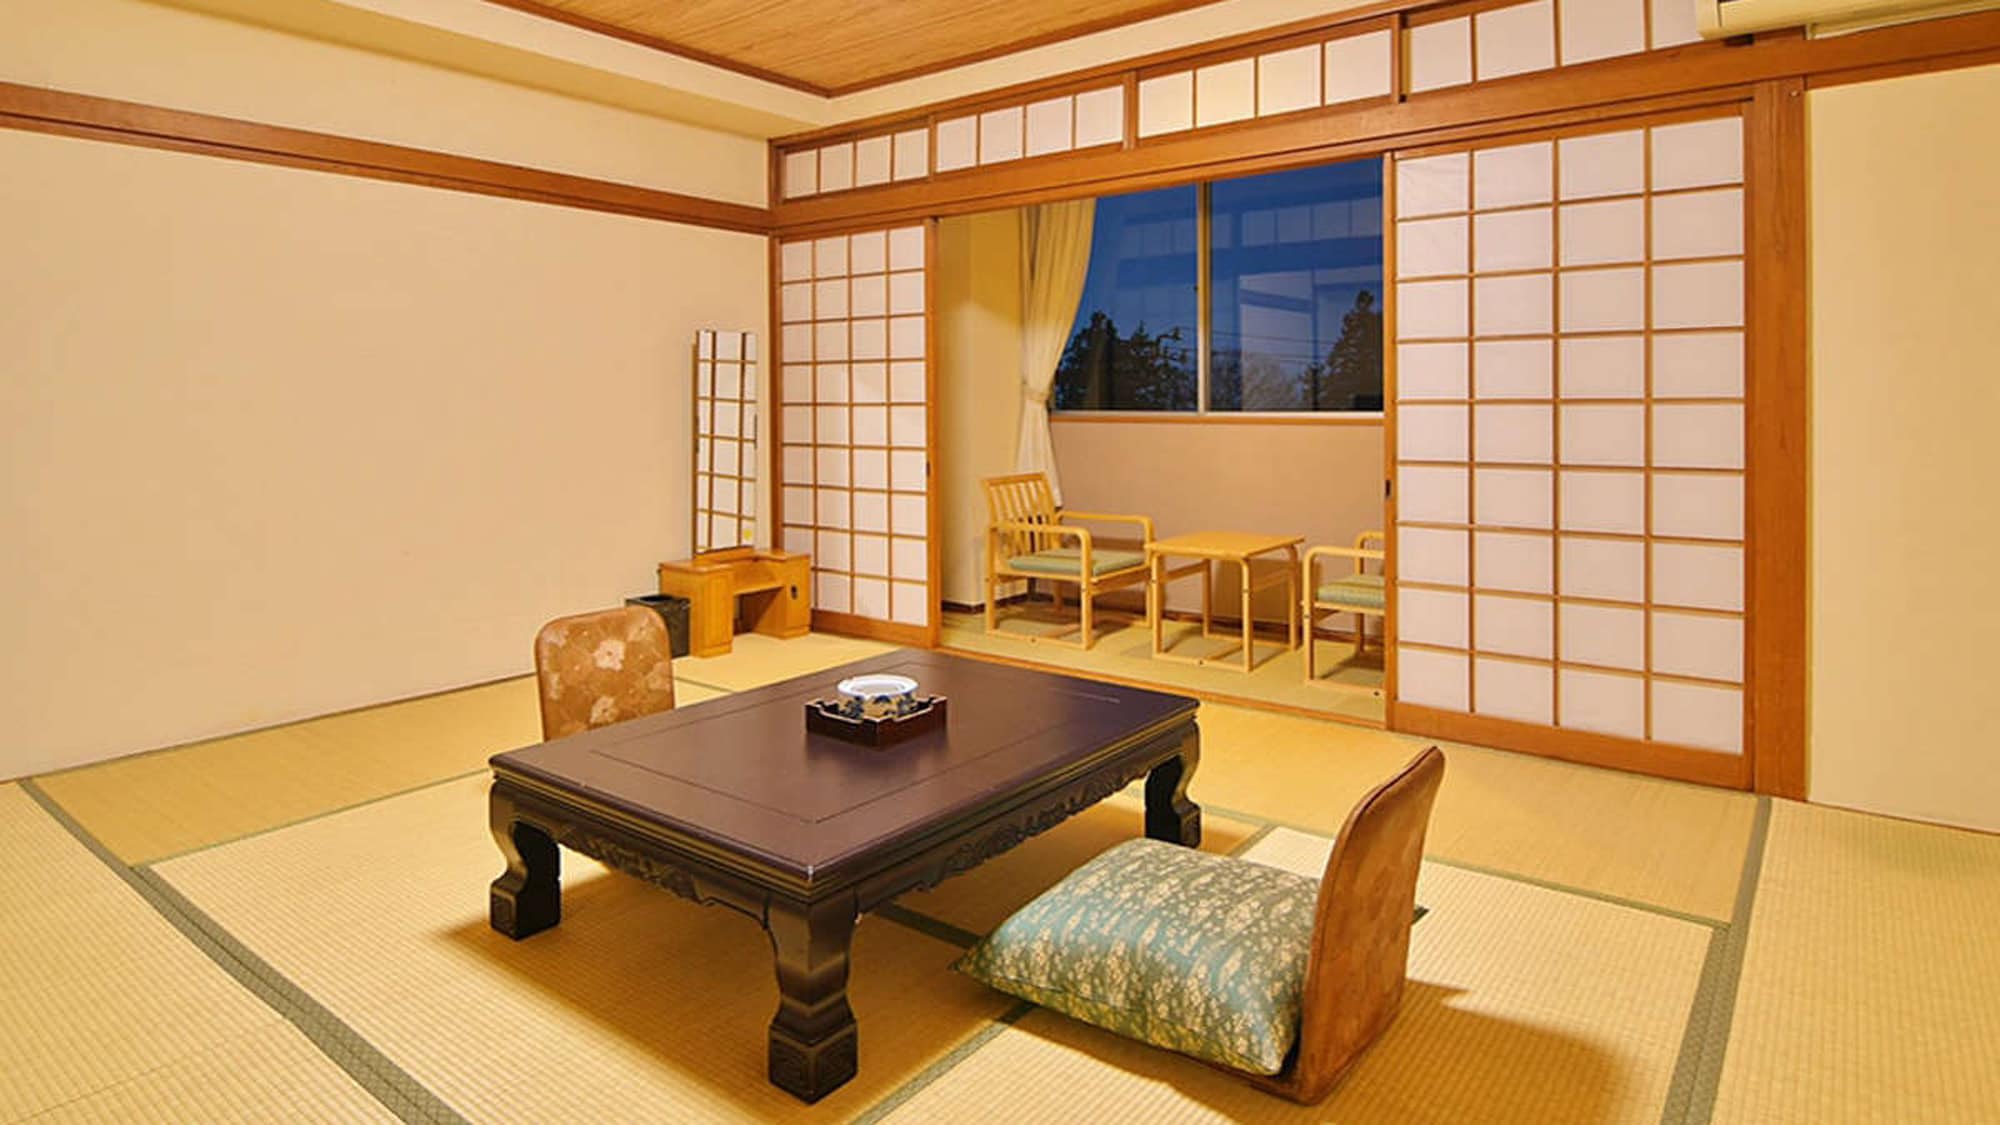 10张榻榻米的日式房间示例